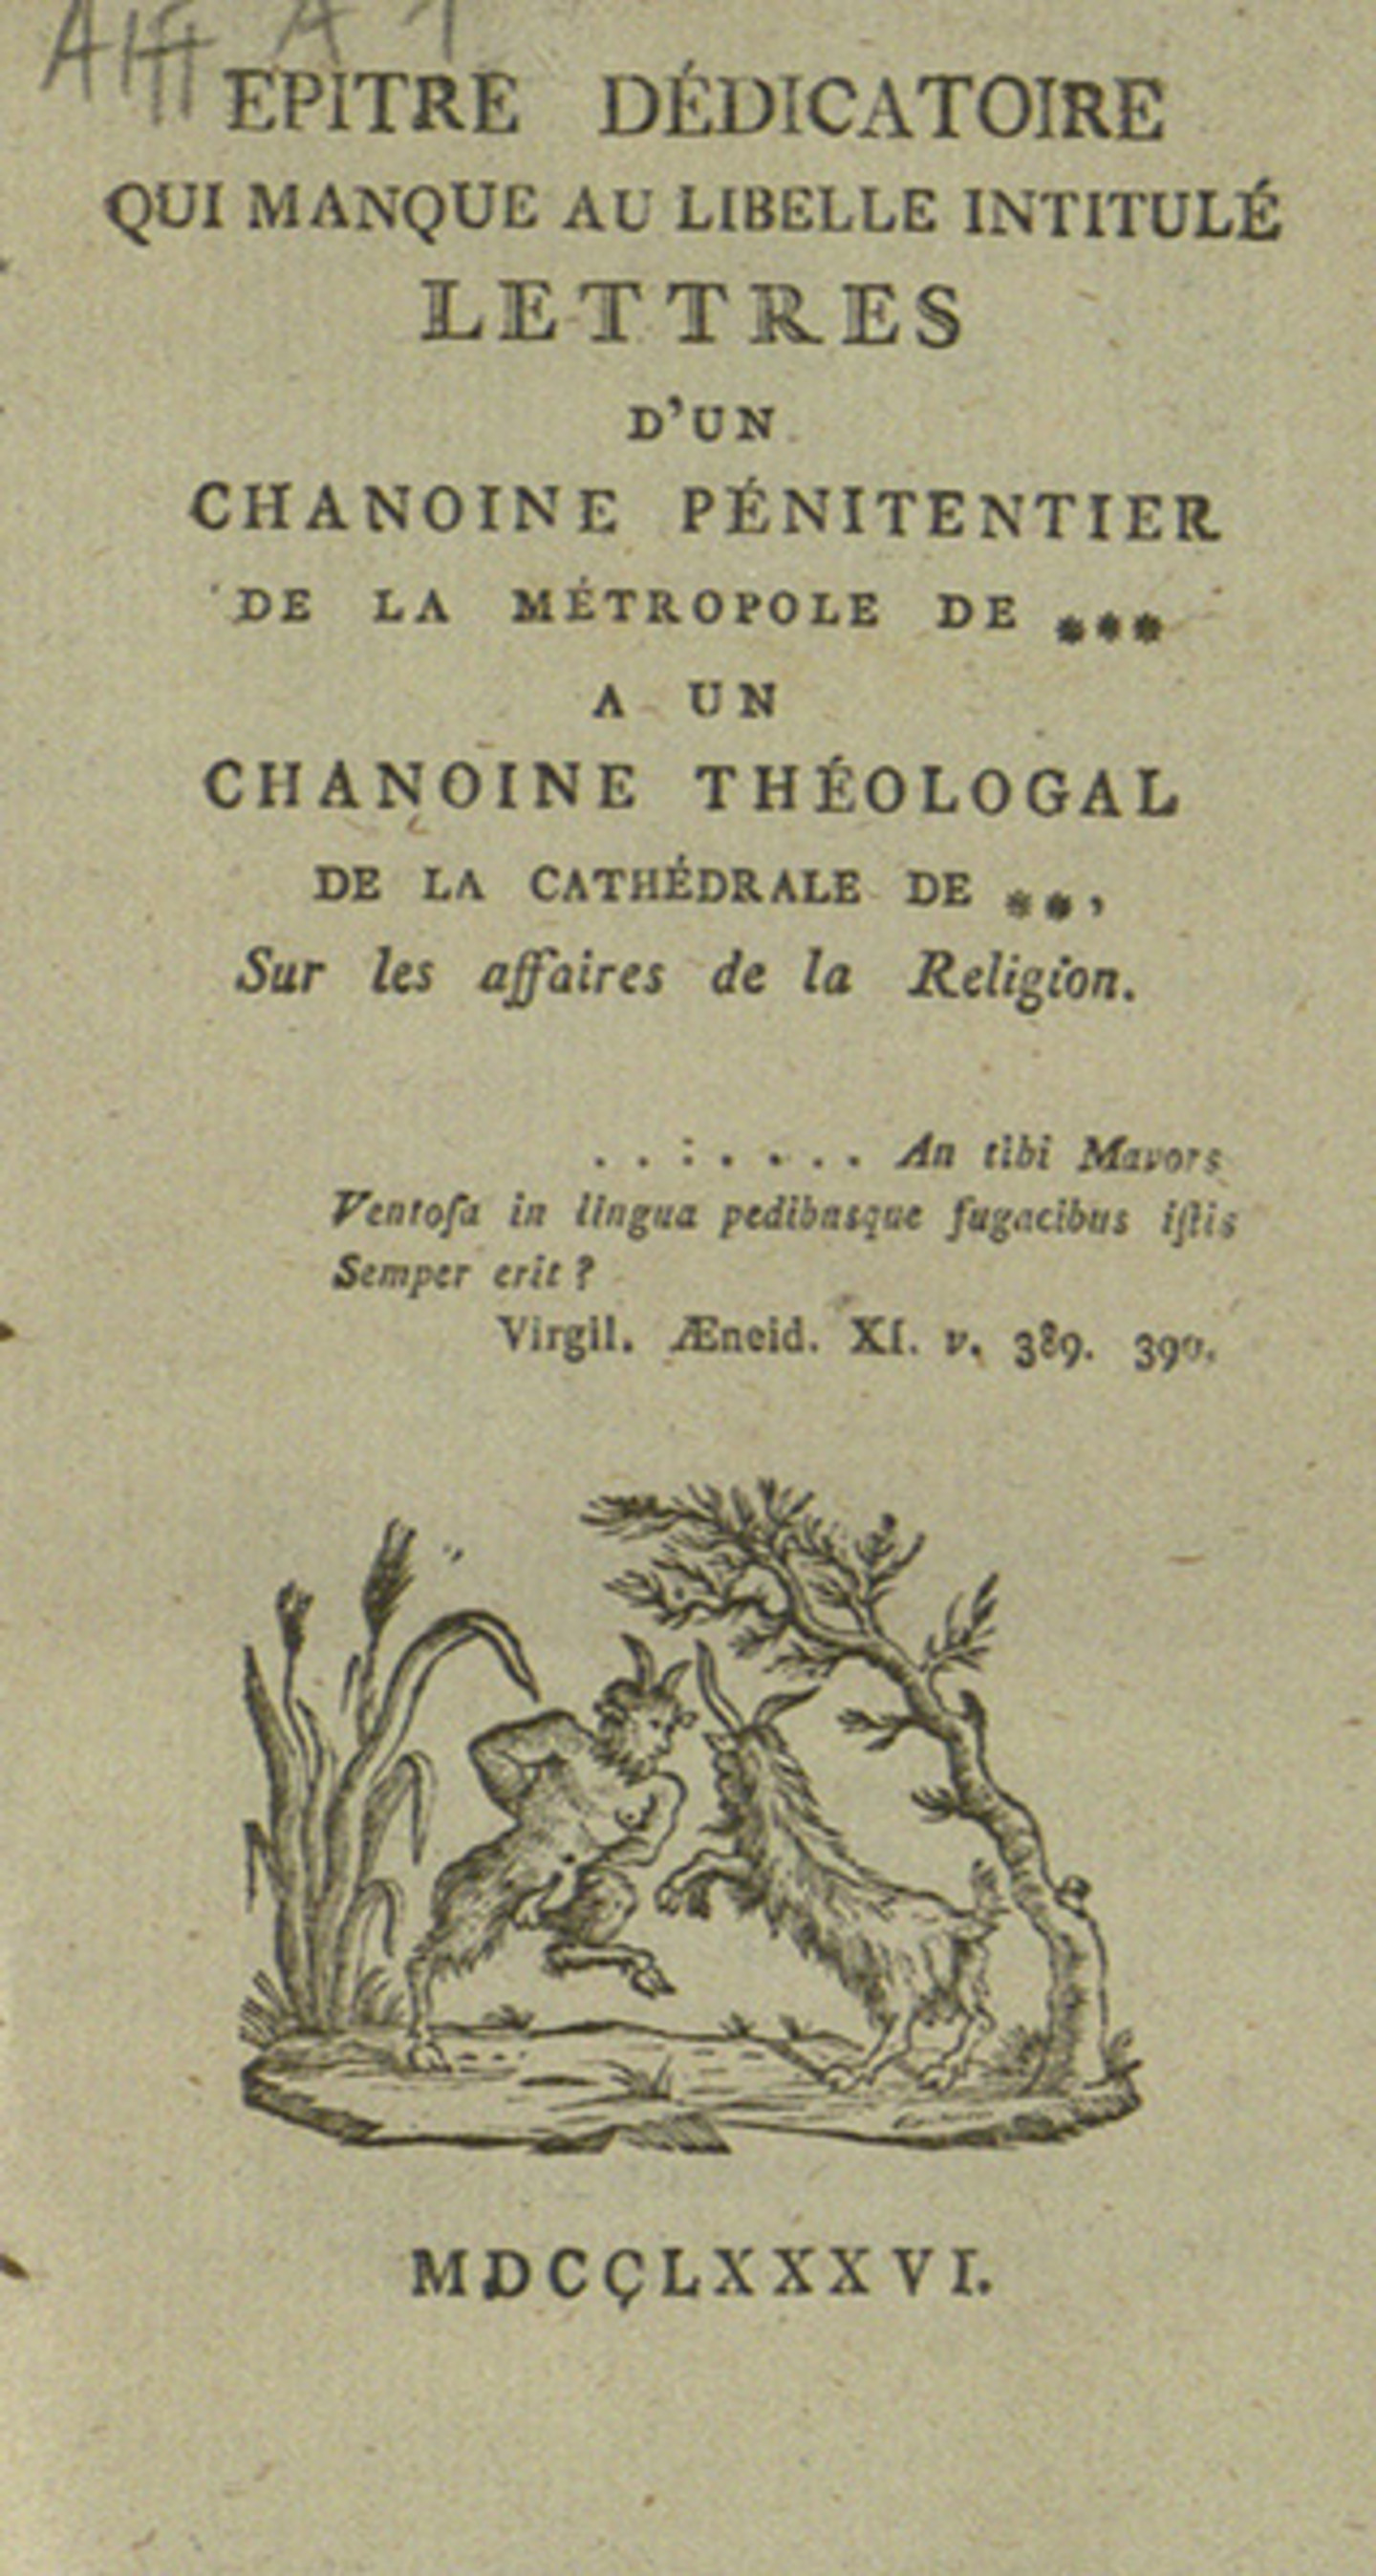 Das Titelblatt "Lettres d'un chianoine pénitentier".